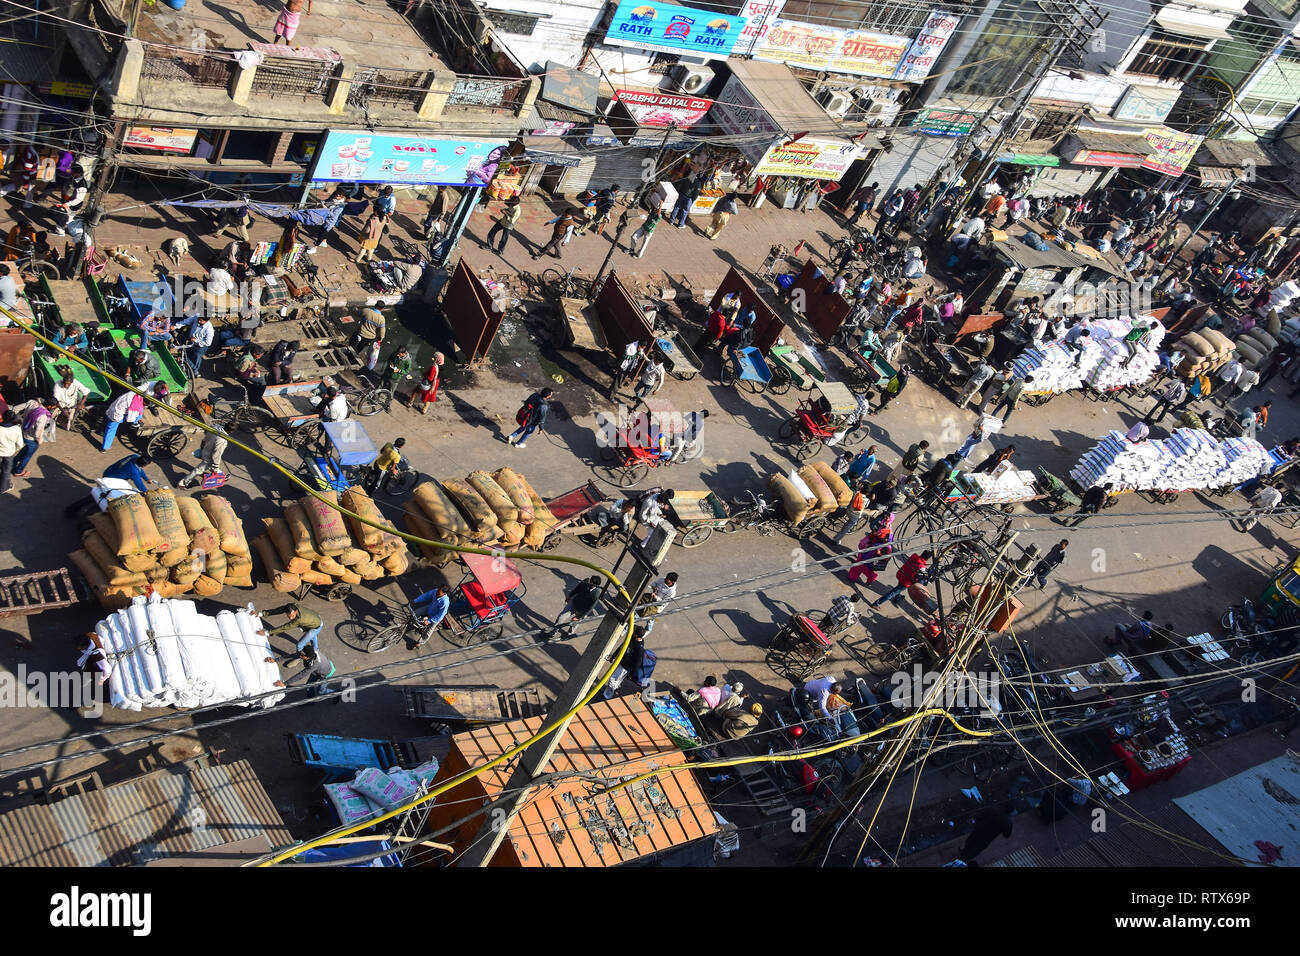 Dachterrasse mit Blick auf khari Baoli, belebten Indischen Großhandel Spice Market, Old Delhi, Indien Stockfoto